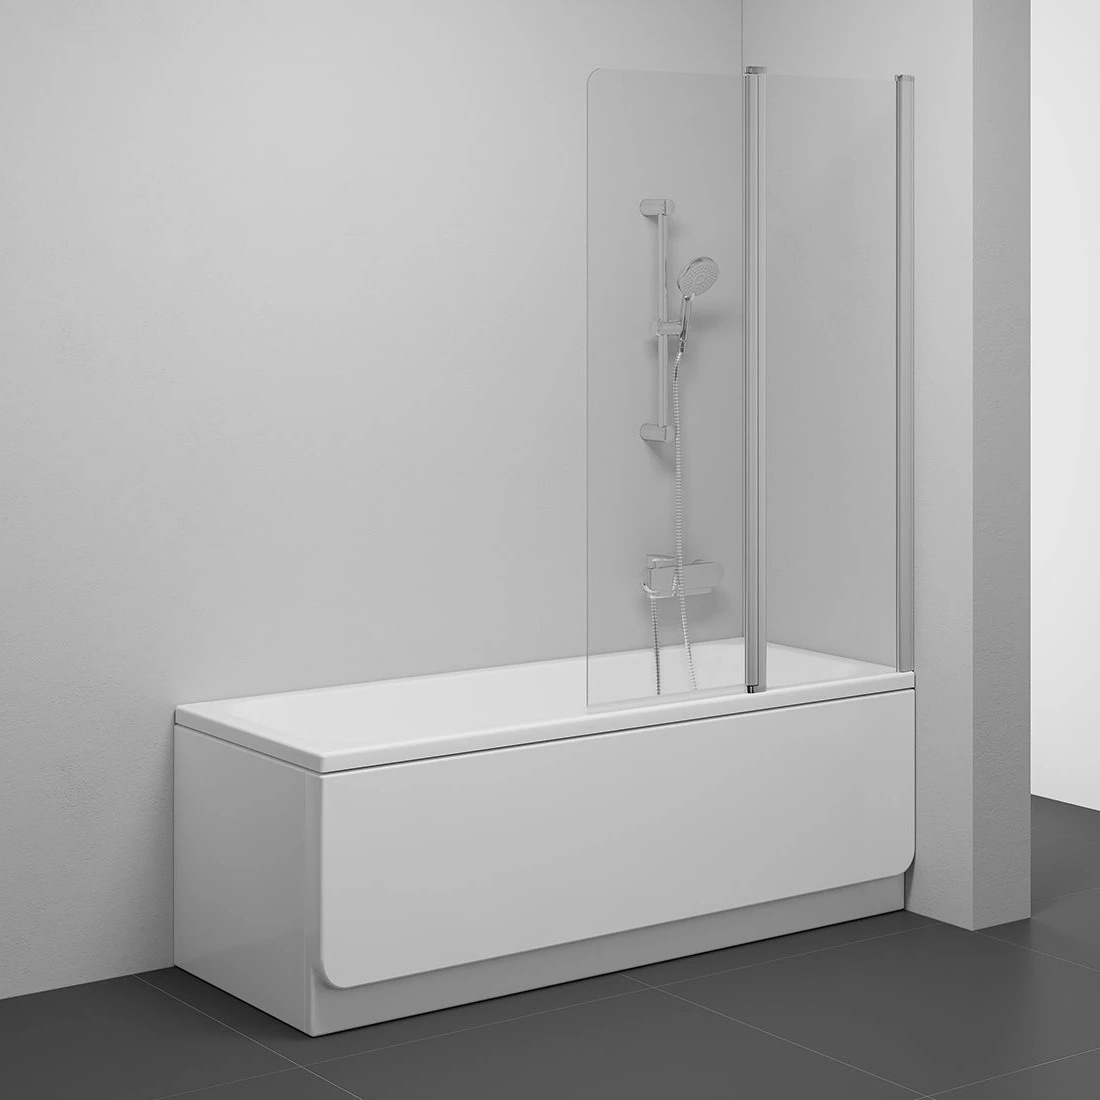 Шторка стеклянная для ванны двухсекционная распашная 150x99см RAVAK CHROME CVS2-100 R стекло прозрачное 6мм профиль сатин 7QRA0U00Z1